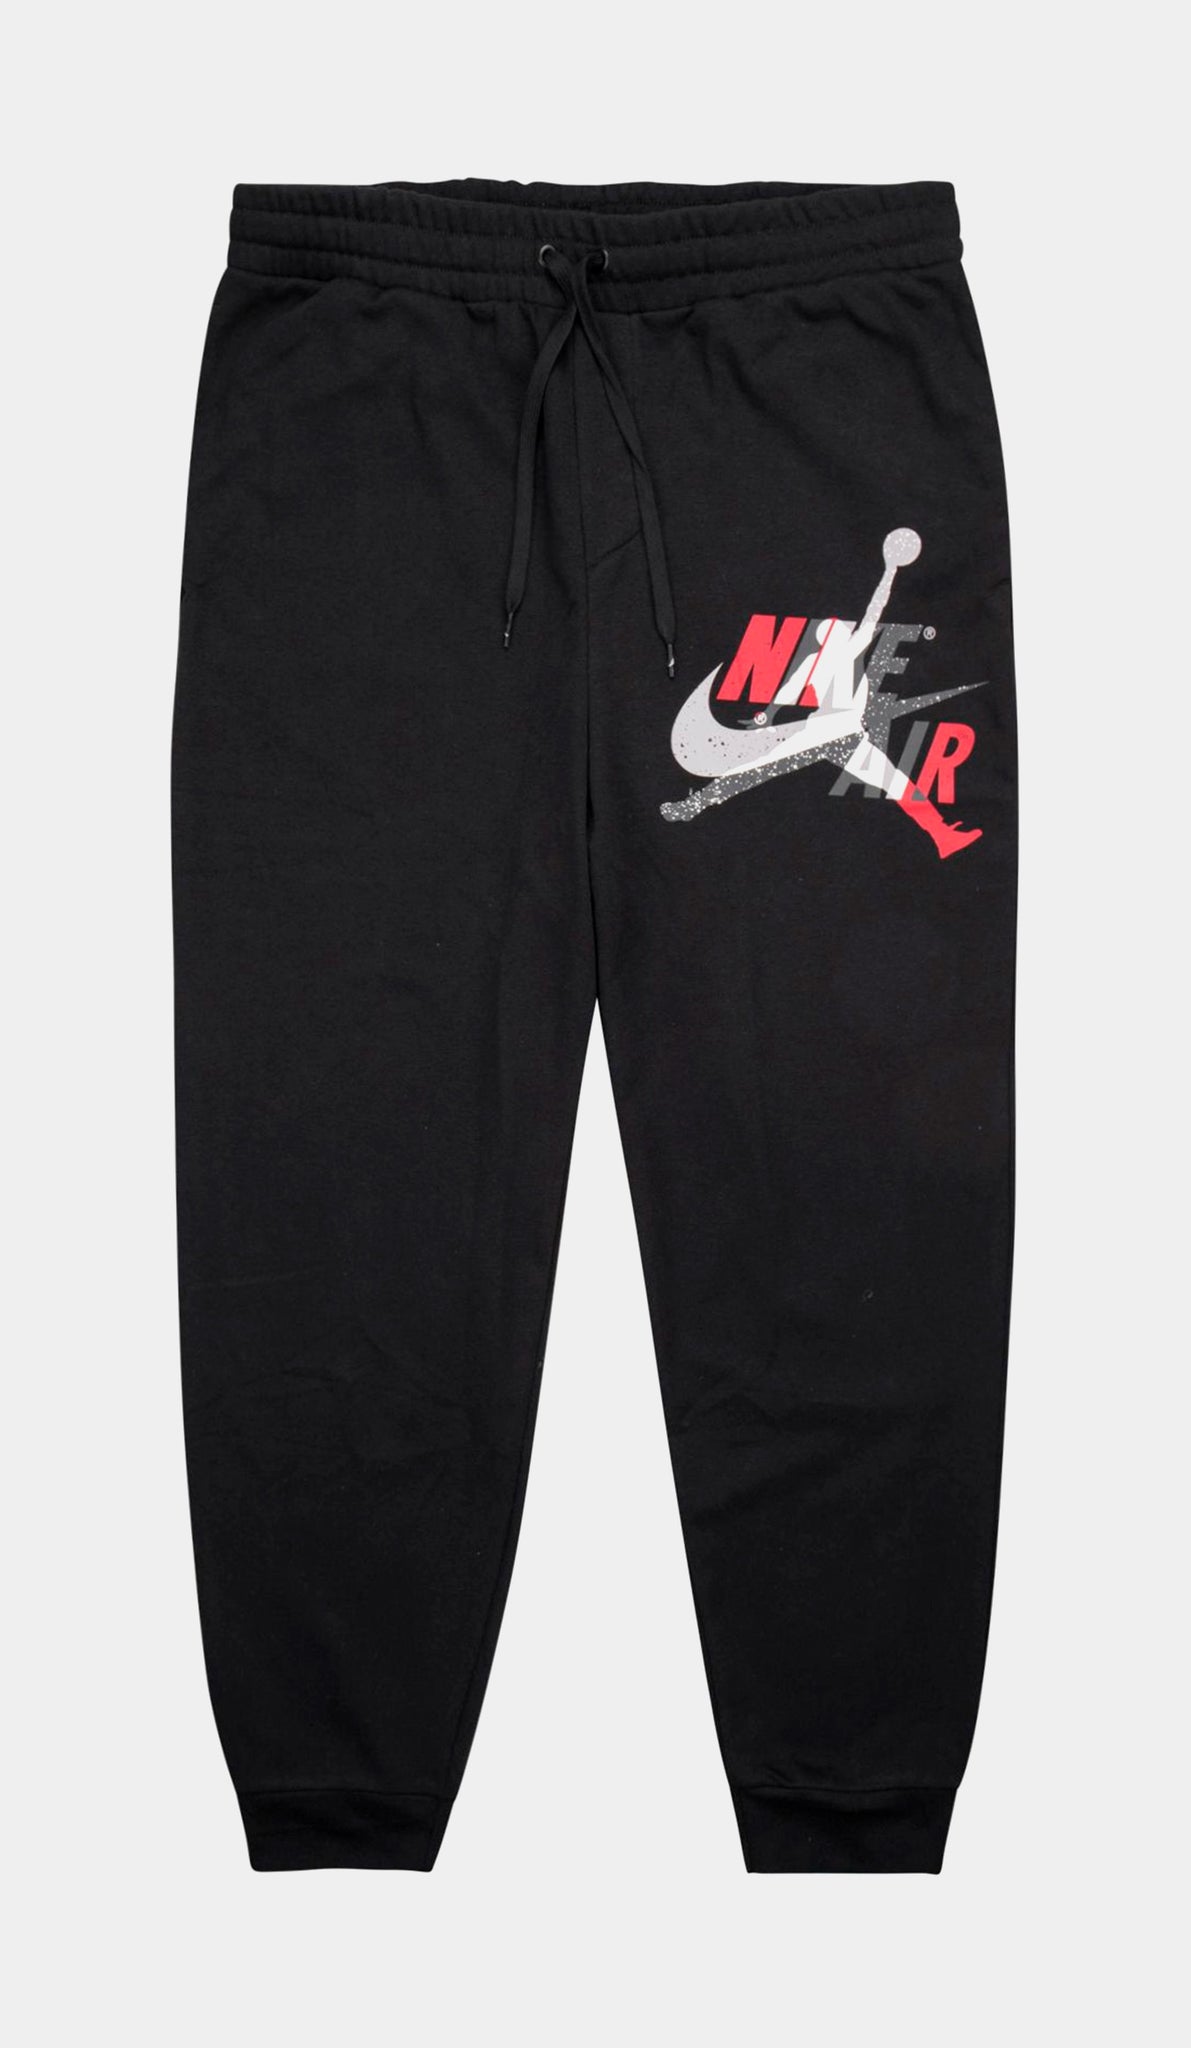 Jordan - Men - Side Jumpman Sweatpants - Black/Red